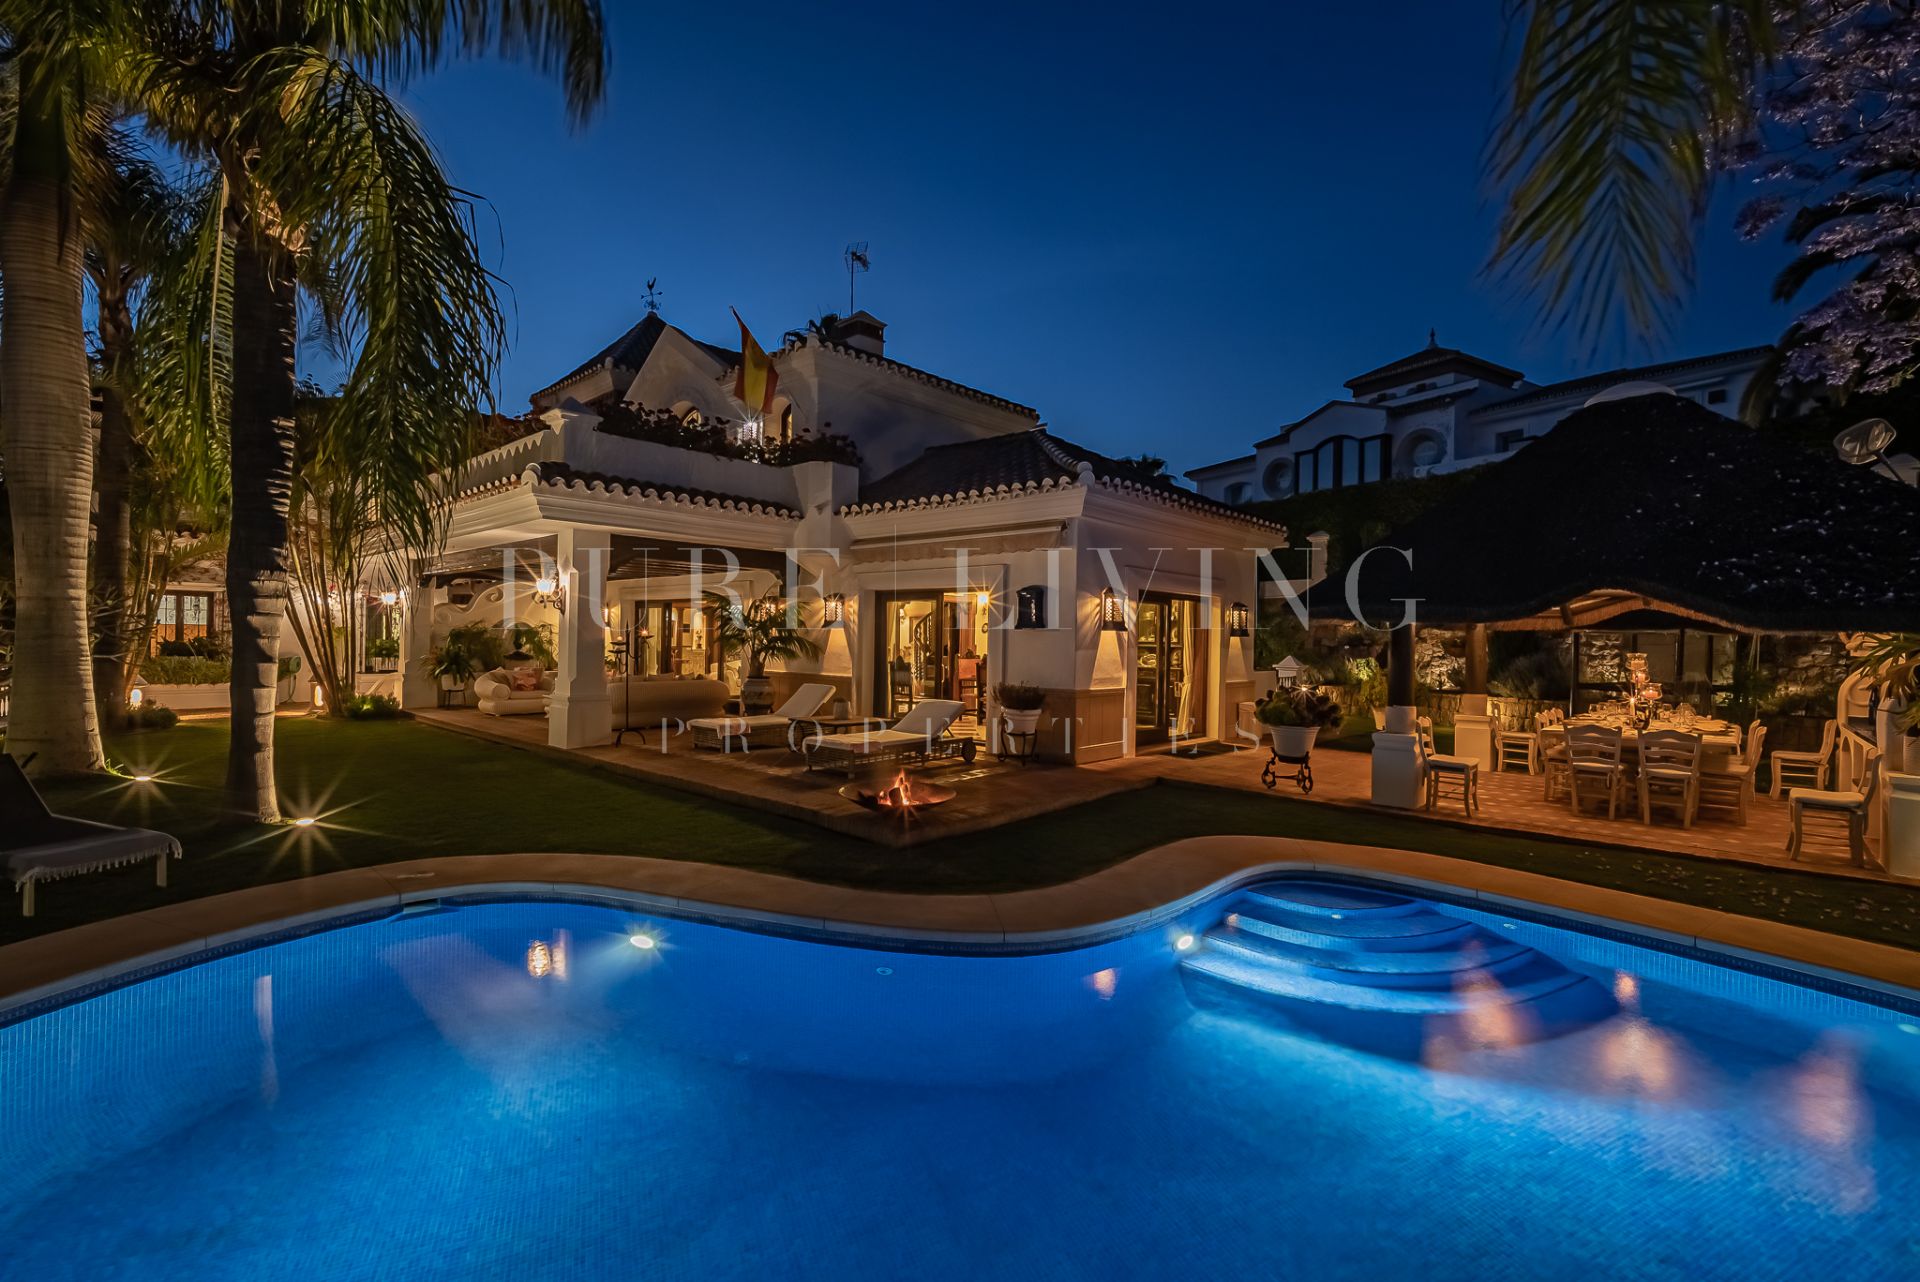 A magnificent family villa located in Bahia de Marbella